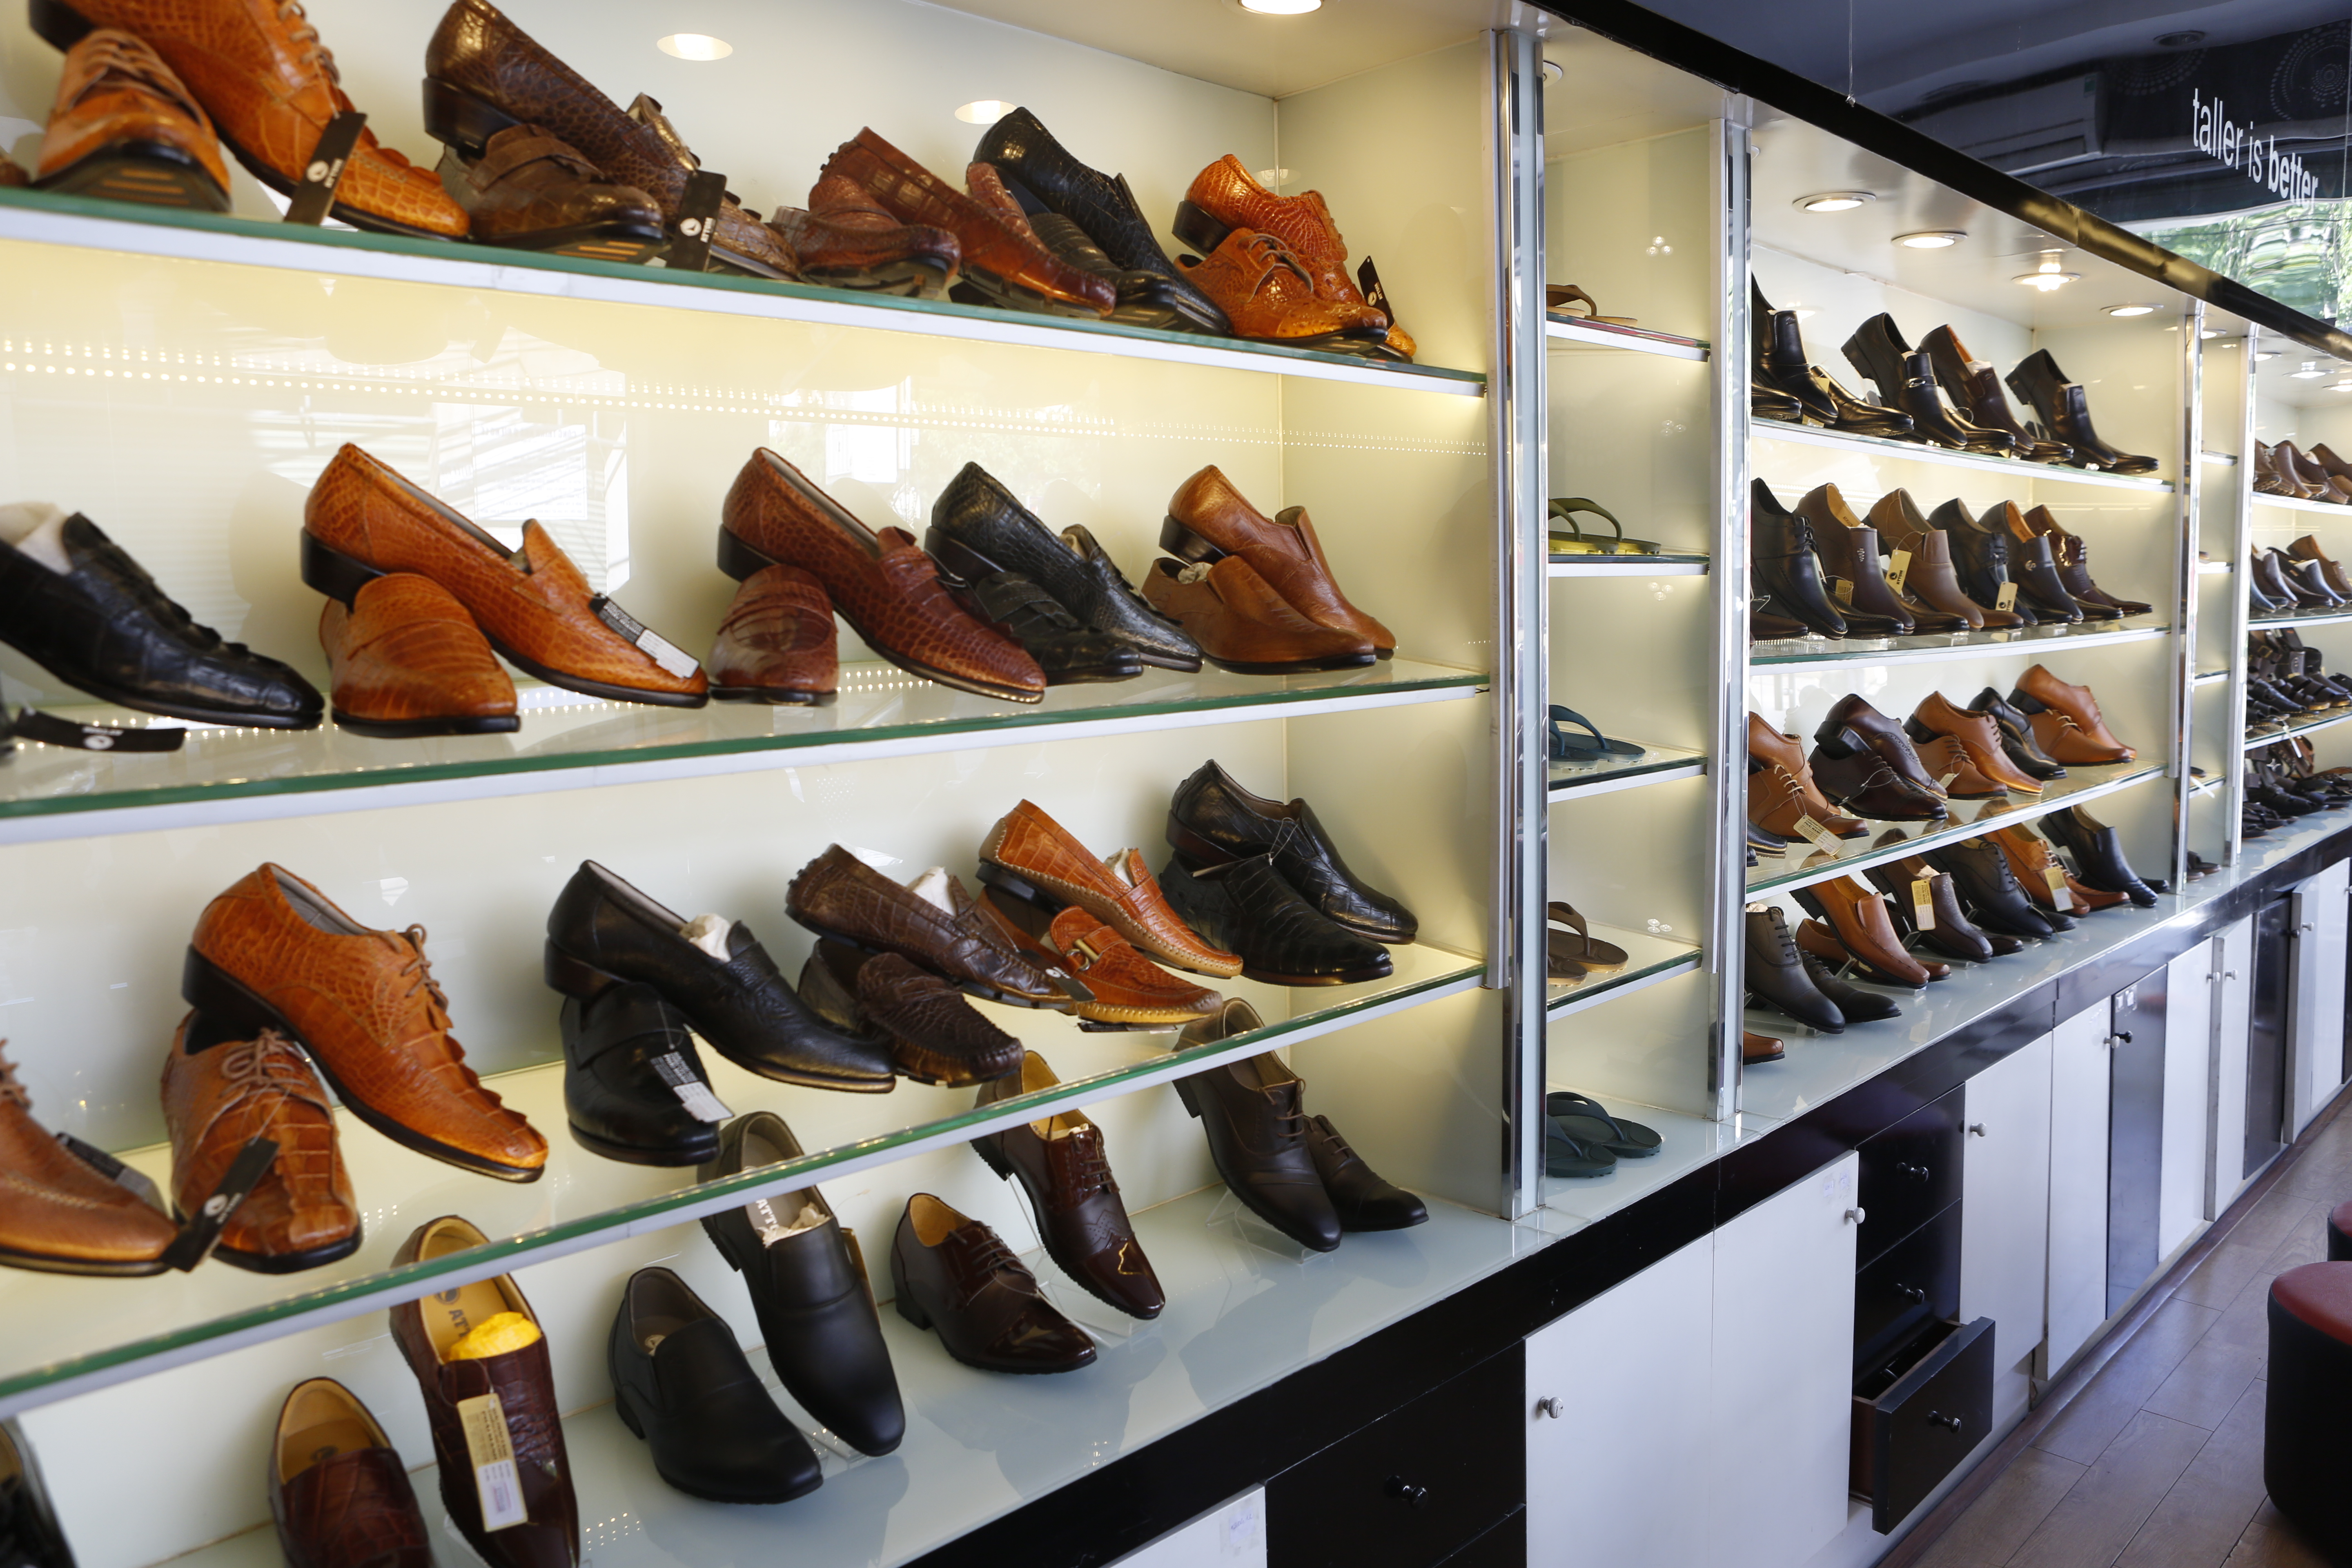 Chủ shop cần biết: Nam giới lựa chọn giày dép như thế nào?